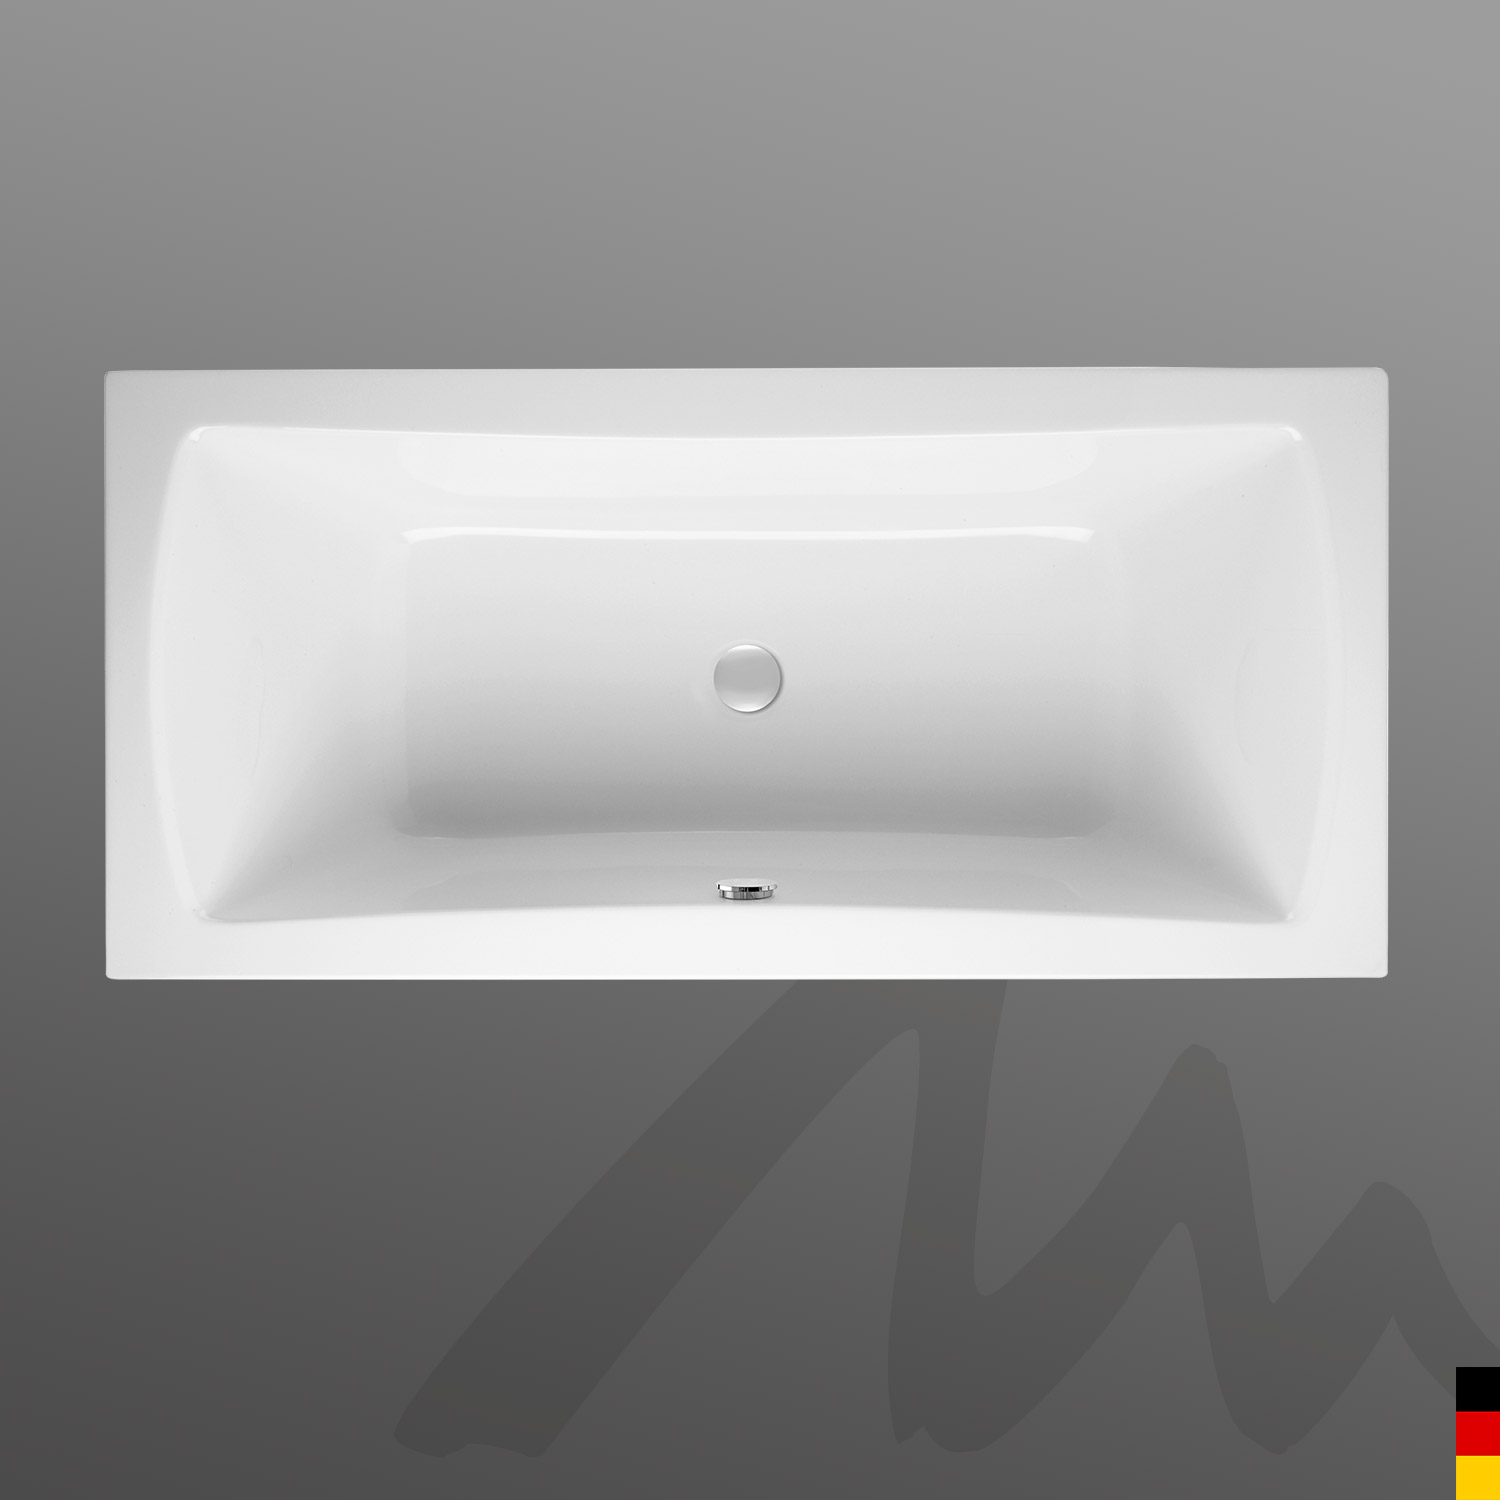 Mauersberger Badewanne Rechteck Jucunda 190/90 duo  190x90x47  Farbe:weiß